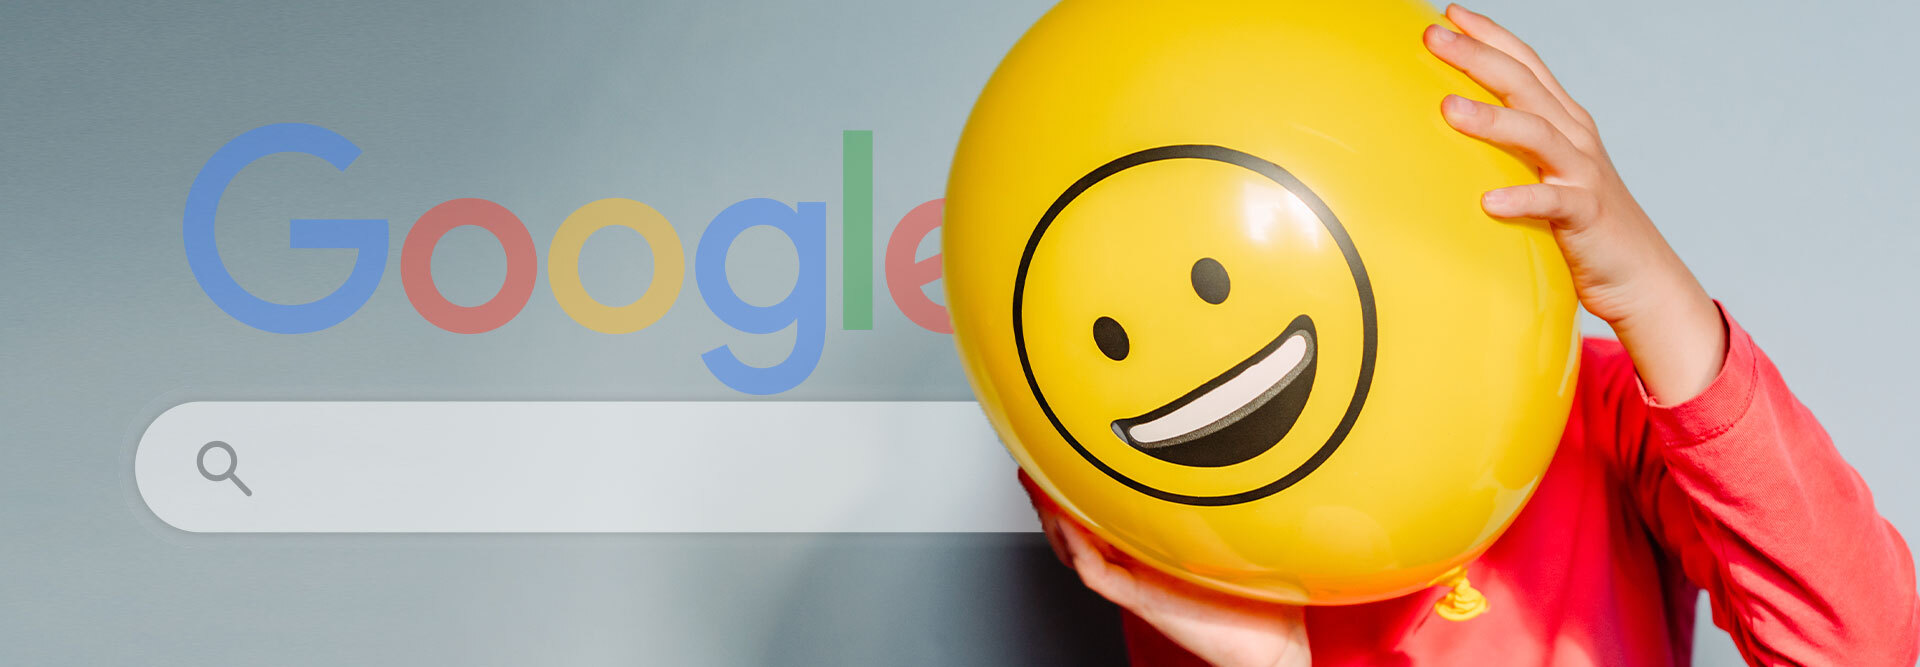 Six Google tricks - just for fun